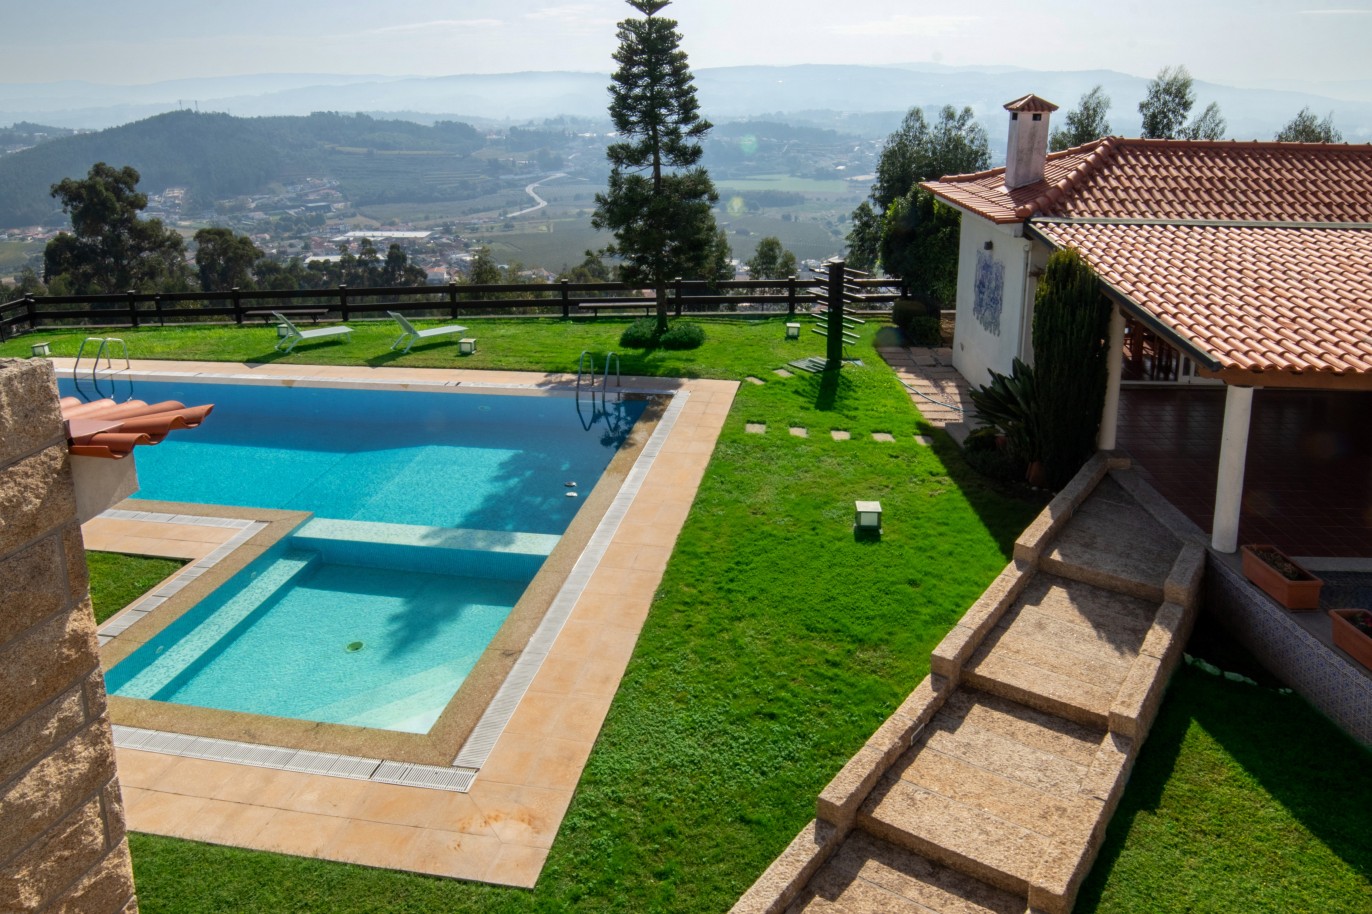 Moradia V6 com piscina, para venda, em Lousada _249013